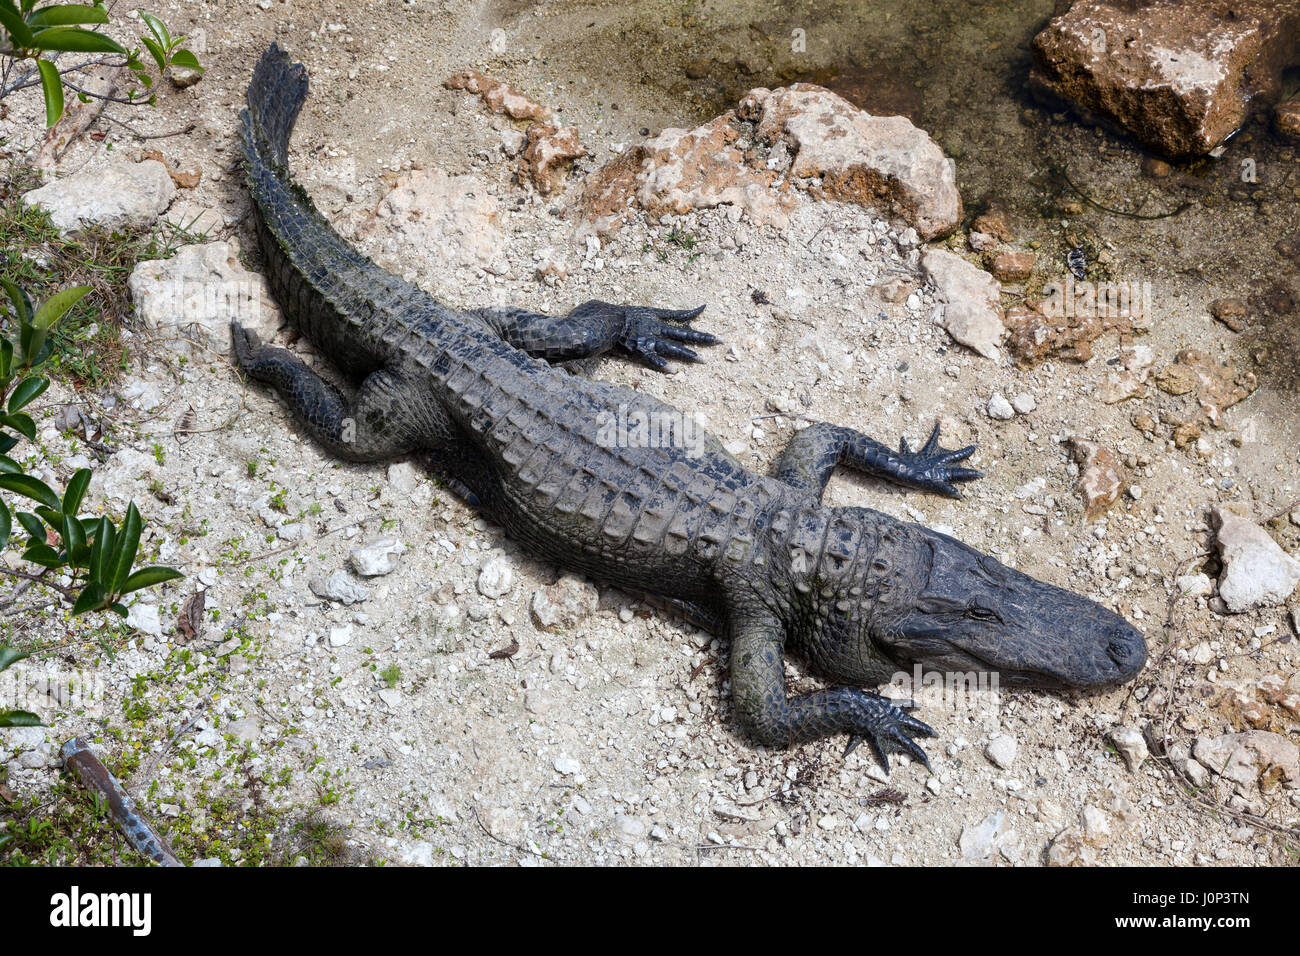 Big alligator dans le parc national des Everglades. Florida, United States Banque D'Images